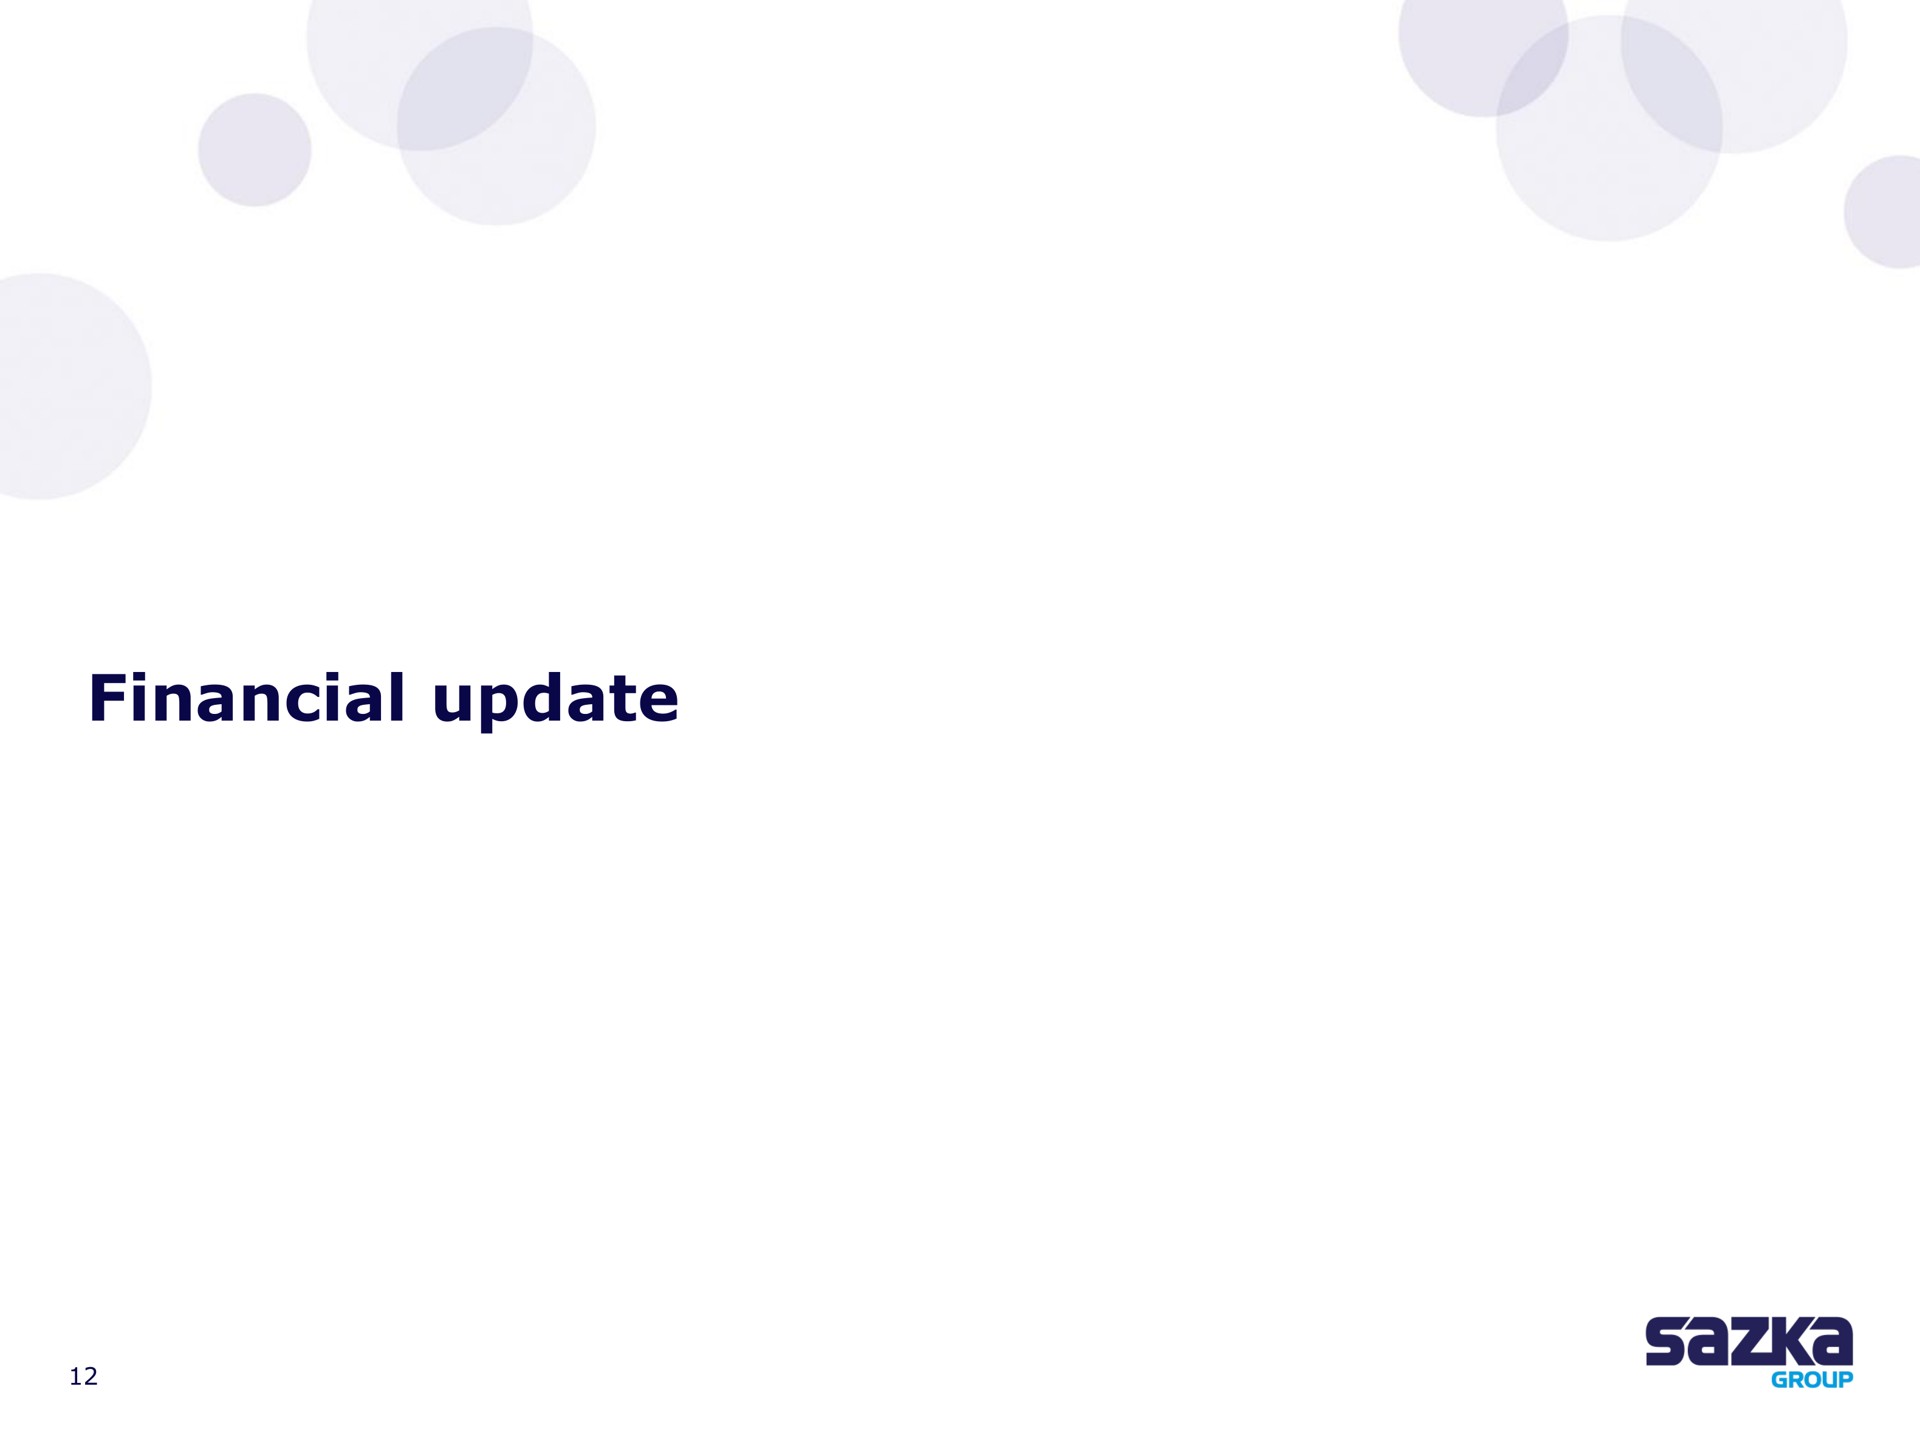 financial update | Allwyn